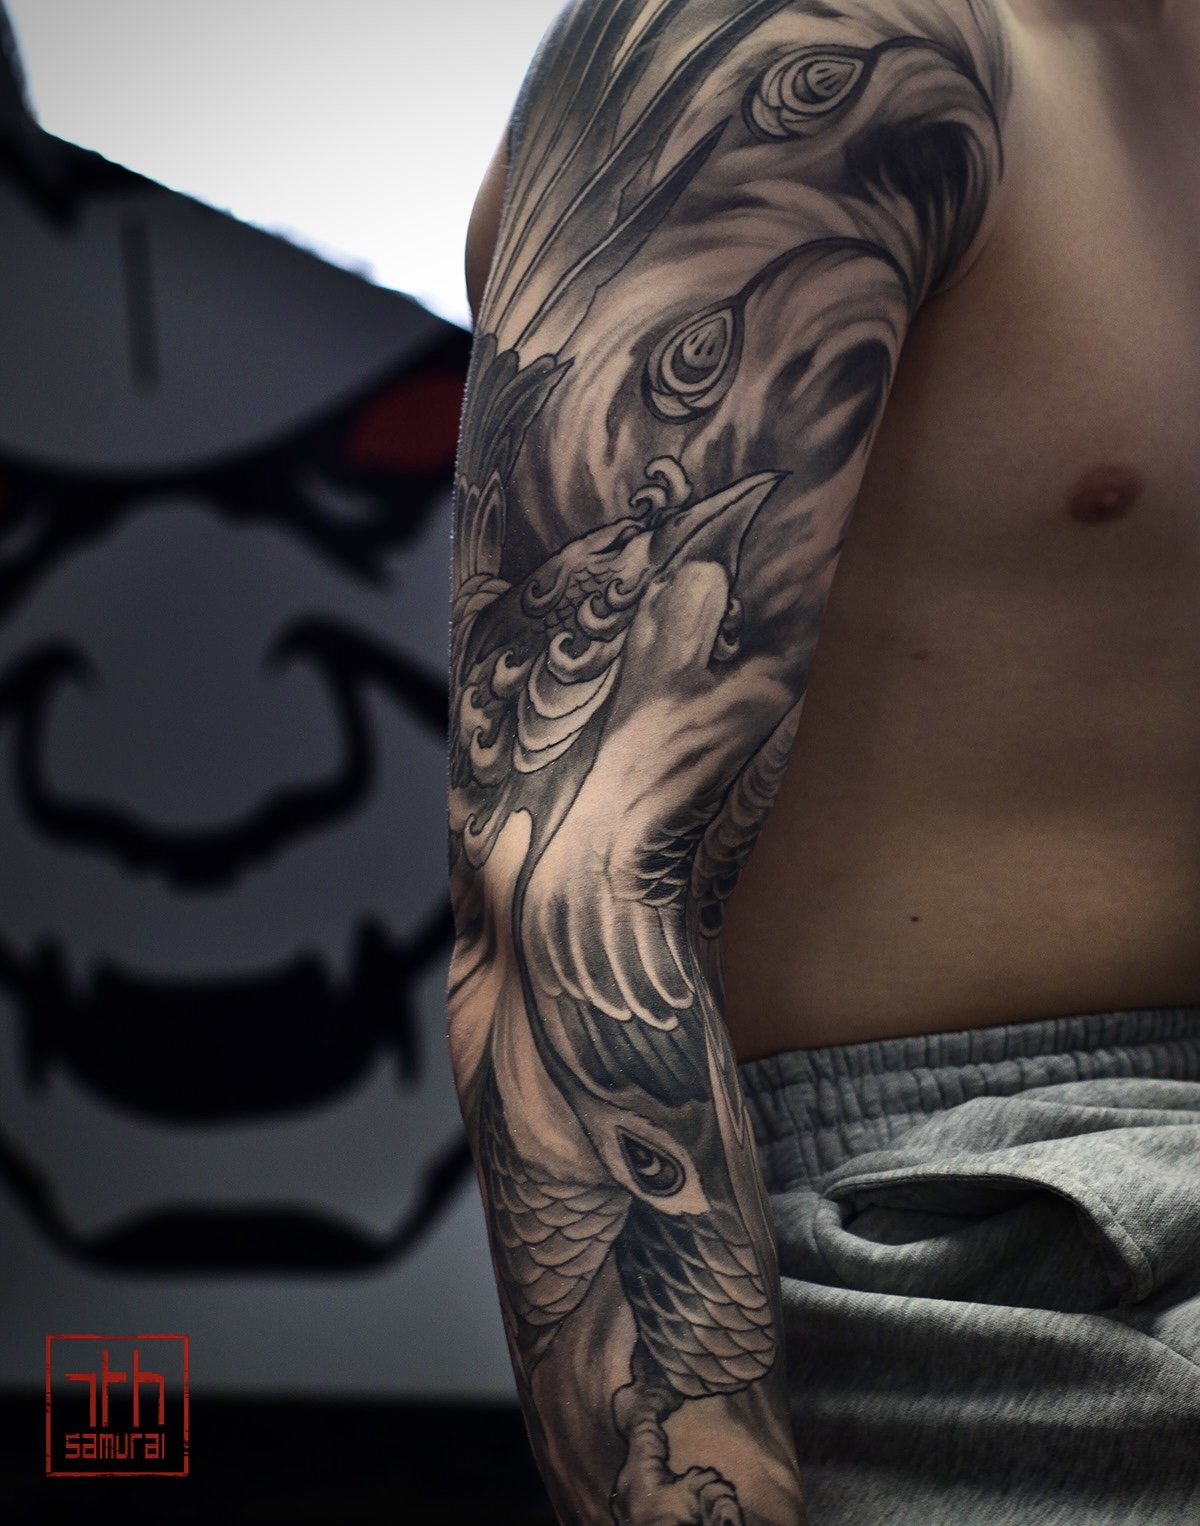 fire feathers phoenix pheonix arise from ashes   Men's asian neo japanese sleeve tattoo  asian Tattoo artist: Kai at 7th Samurai. YEG Edmonton, Alberta, Canada best 2023